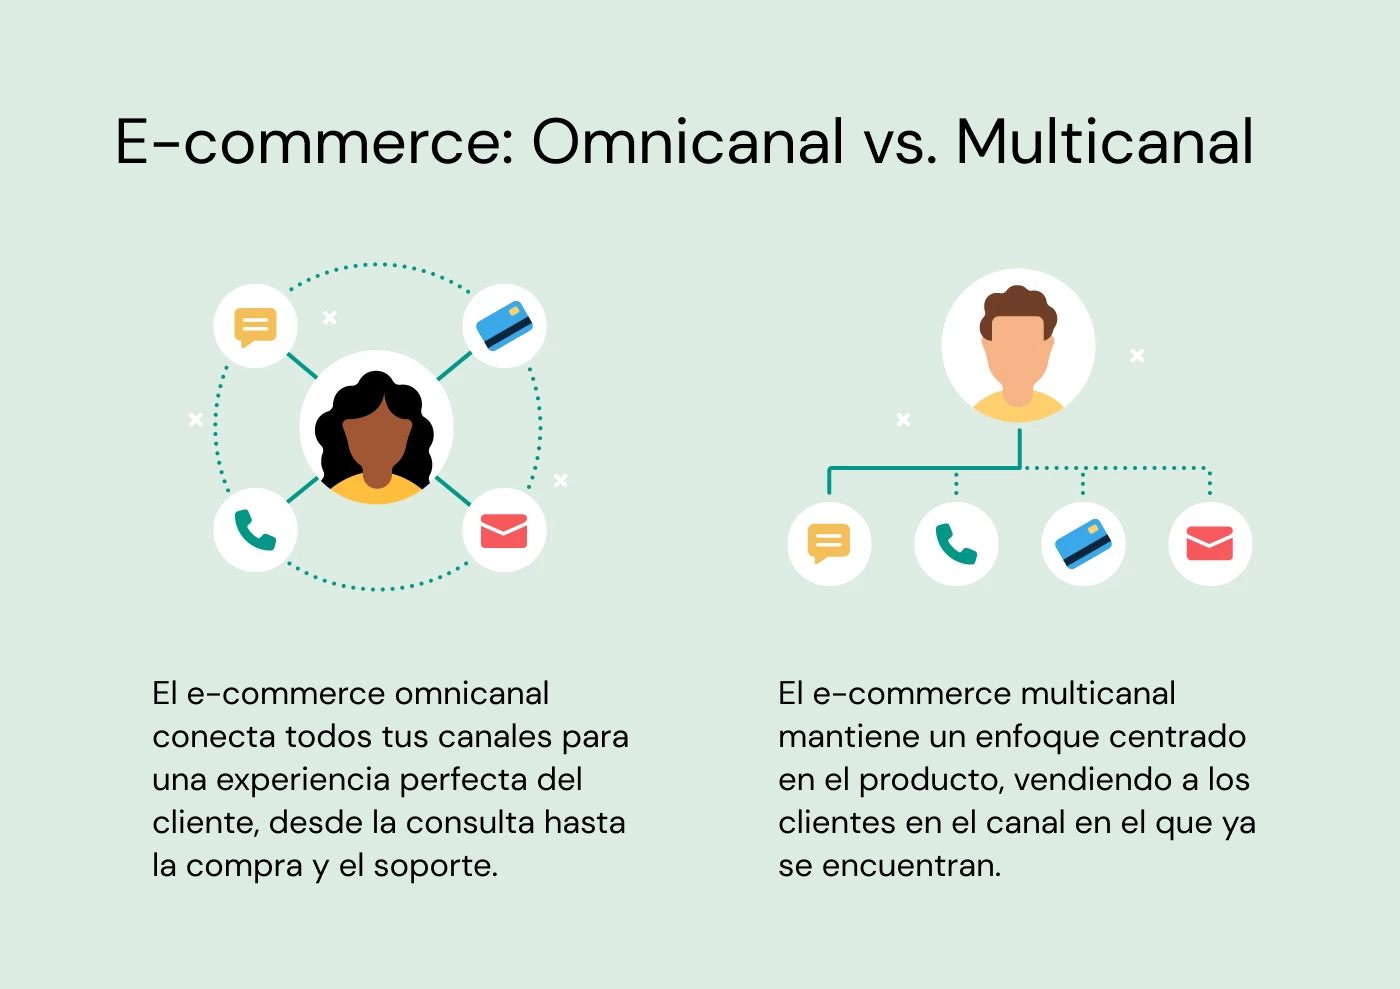 Diferencias entre comercio electrónico omnicanal y multicanal